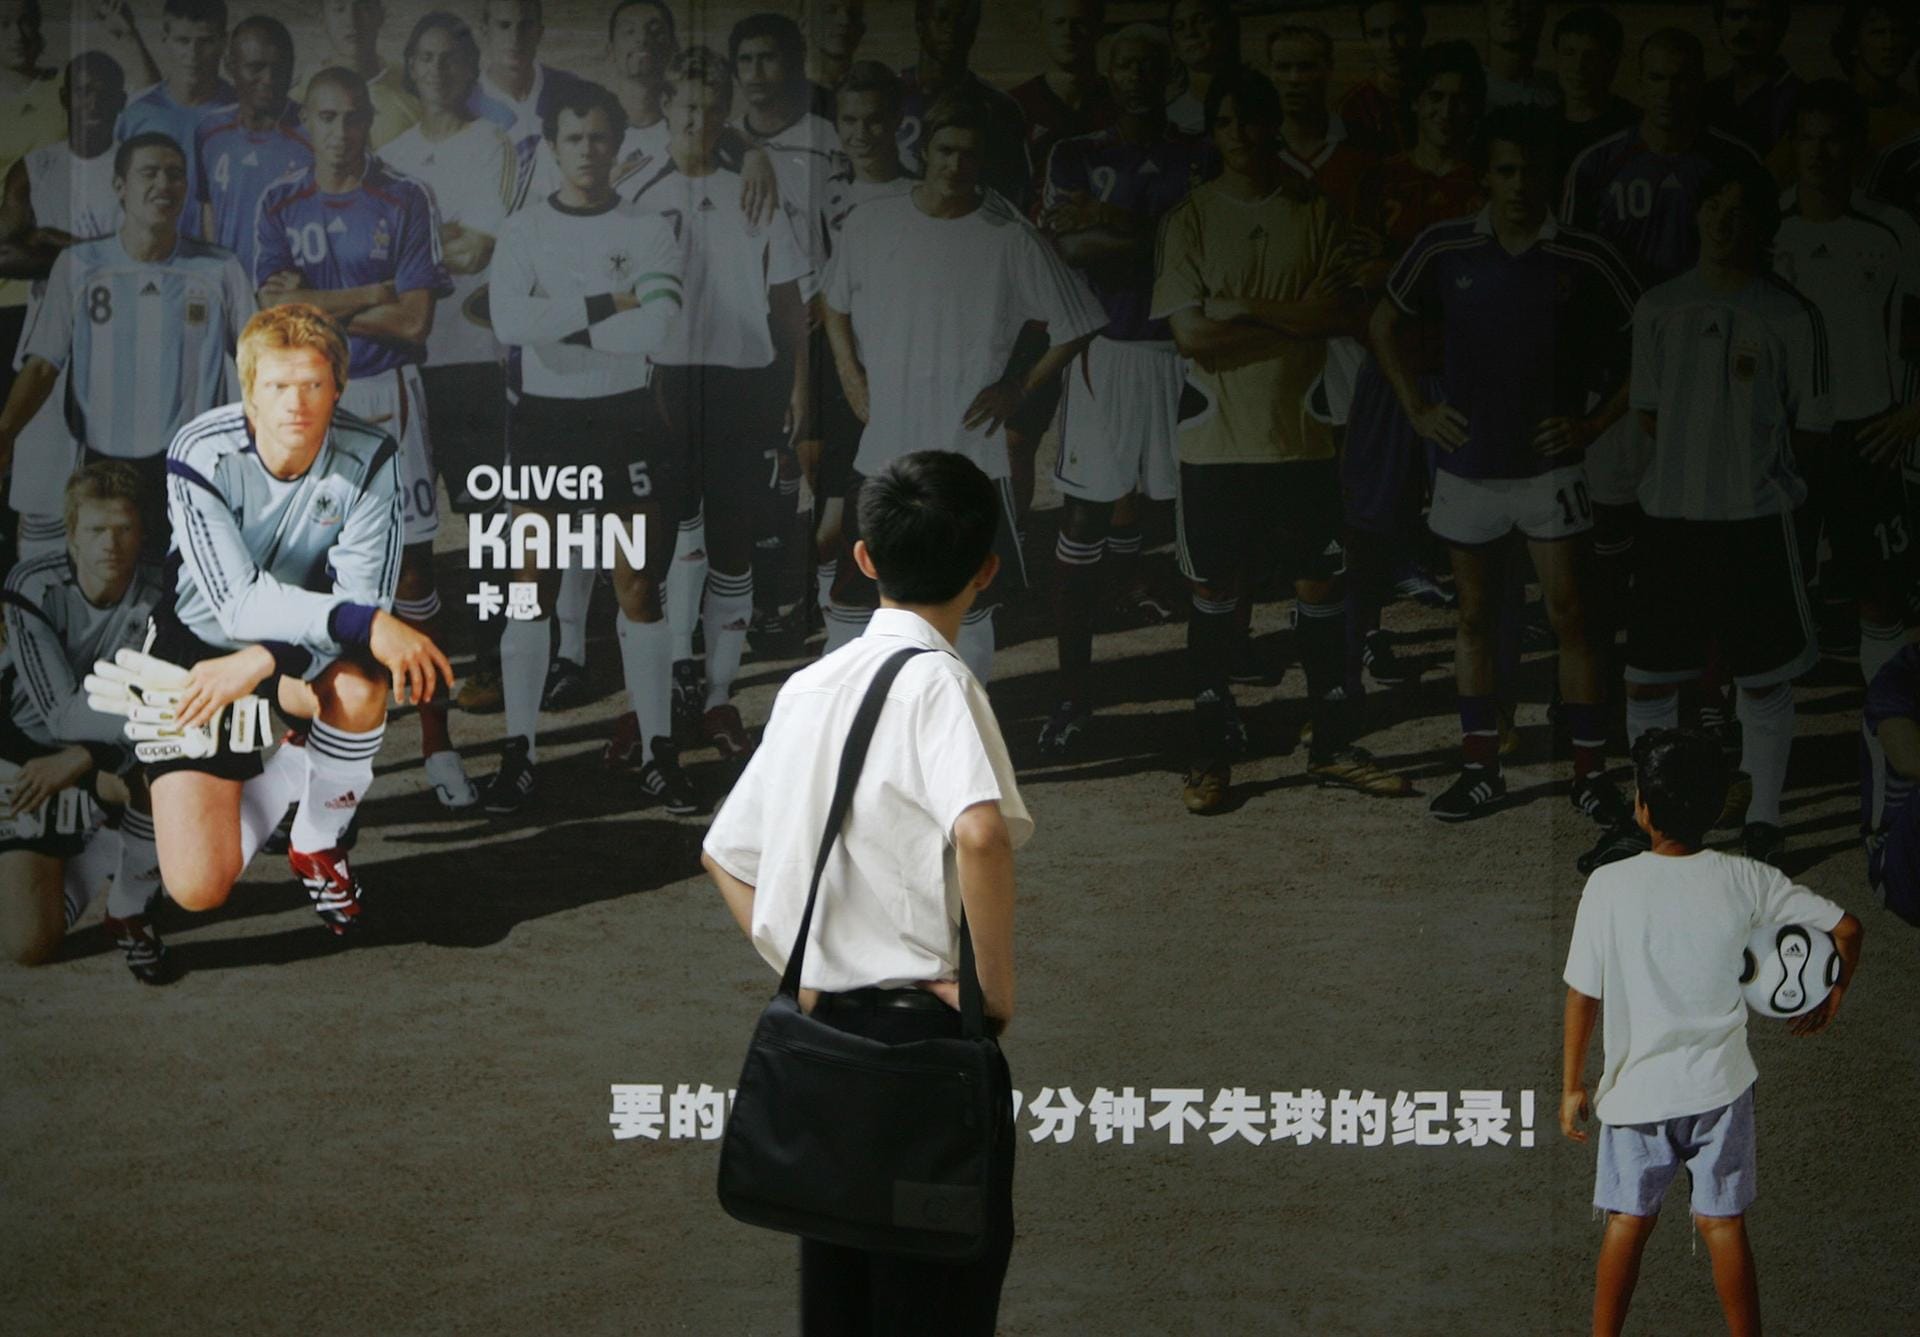 Sein Engagement in Peking ist keine Überraschung: In Asien ist Oliver Kahn seit seinen starken Leistungen bei der WM 2006 eine Ikone und ein beliebtes Werbegesicht.